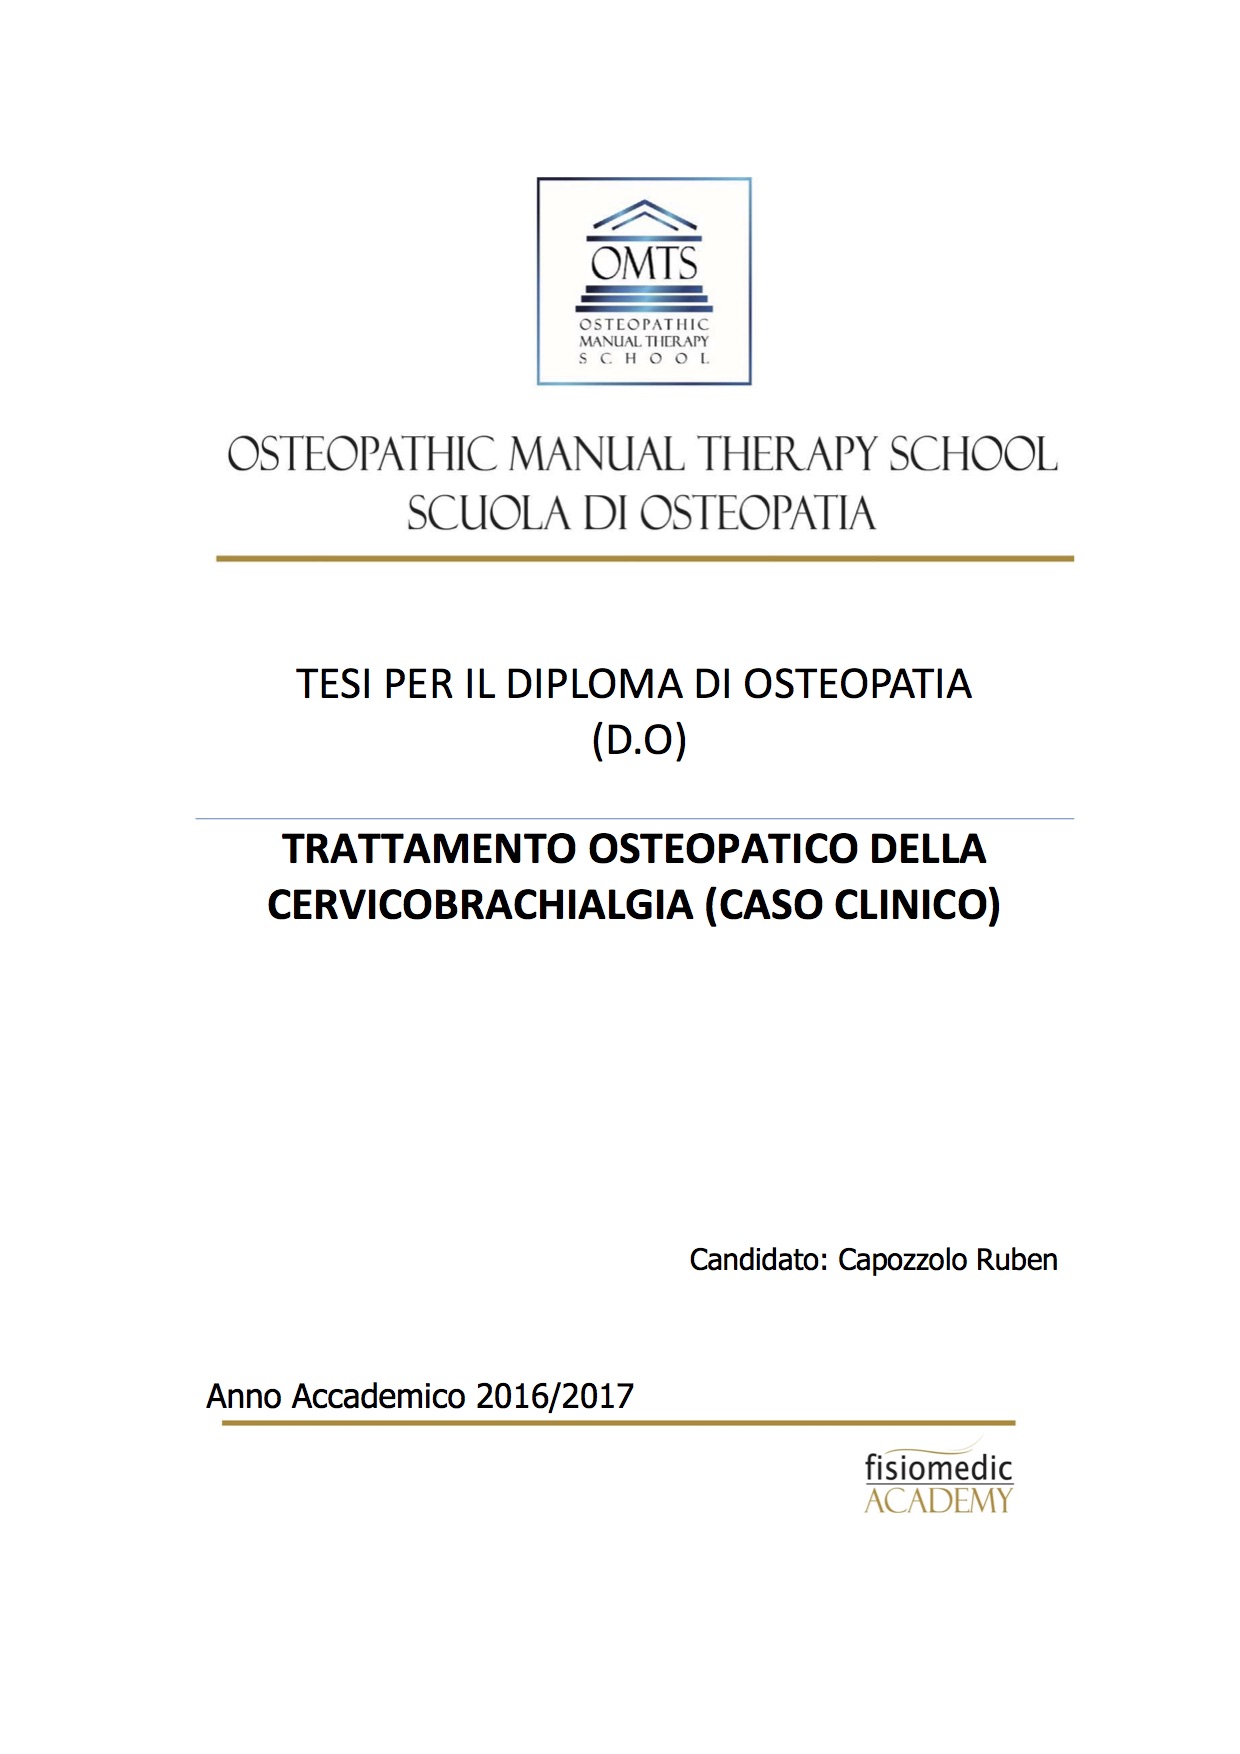 Ruben Capozzolo Tesi Diploma Osteopatia 2017